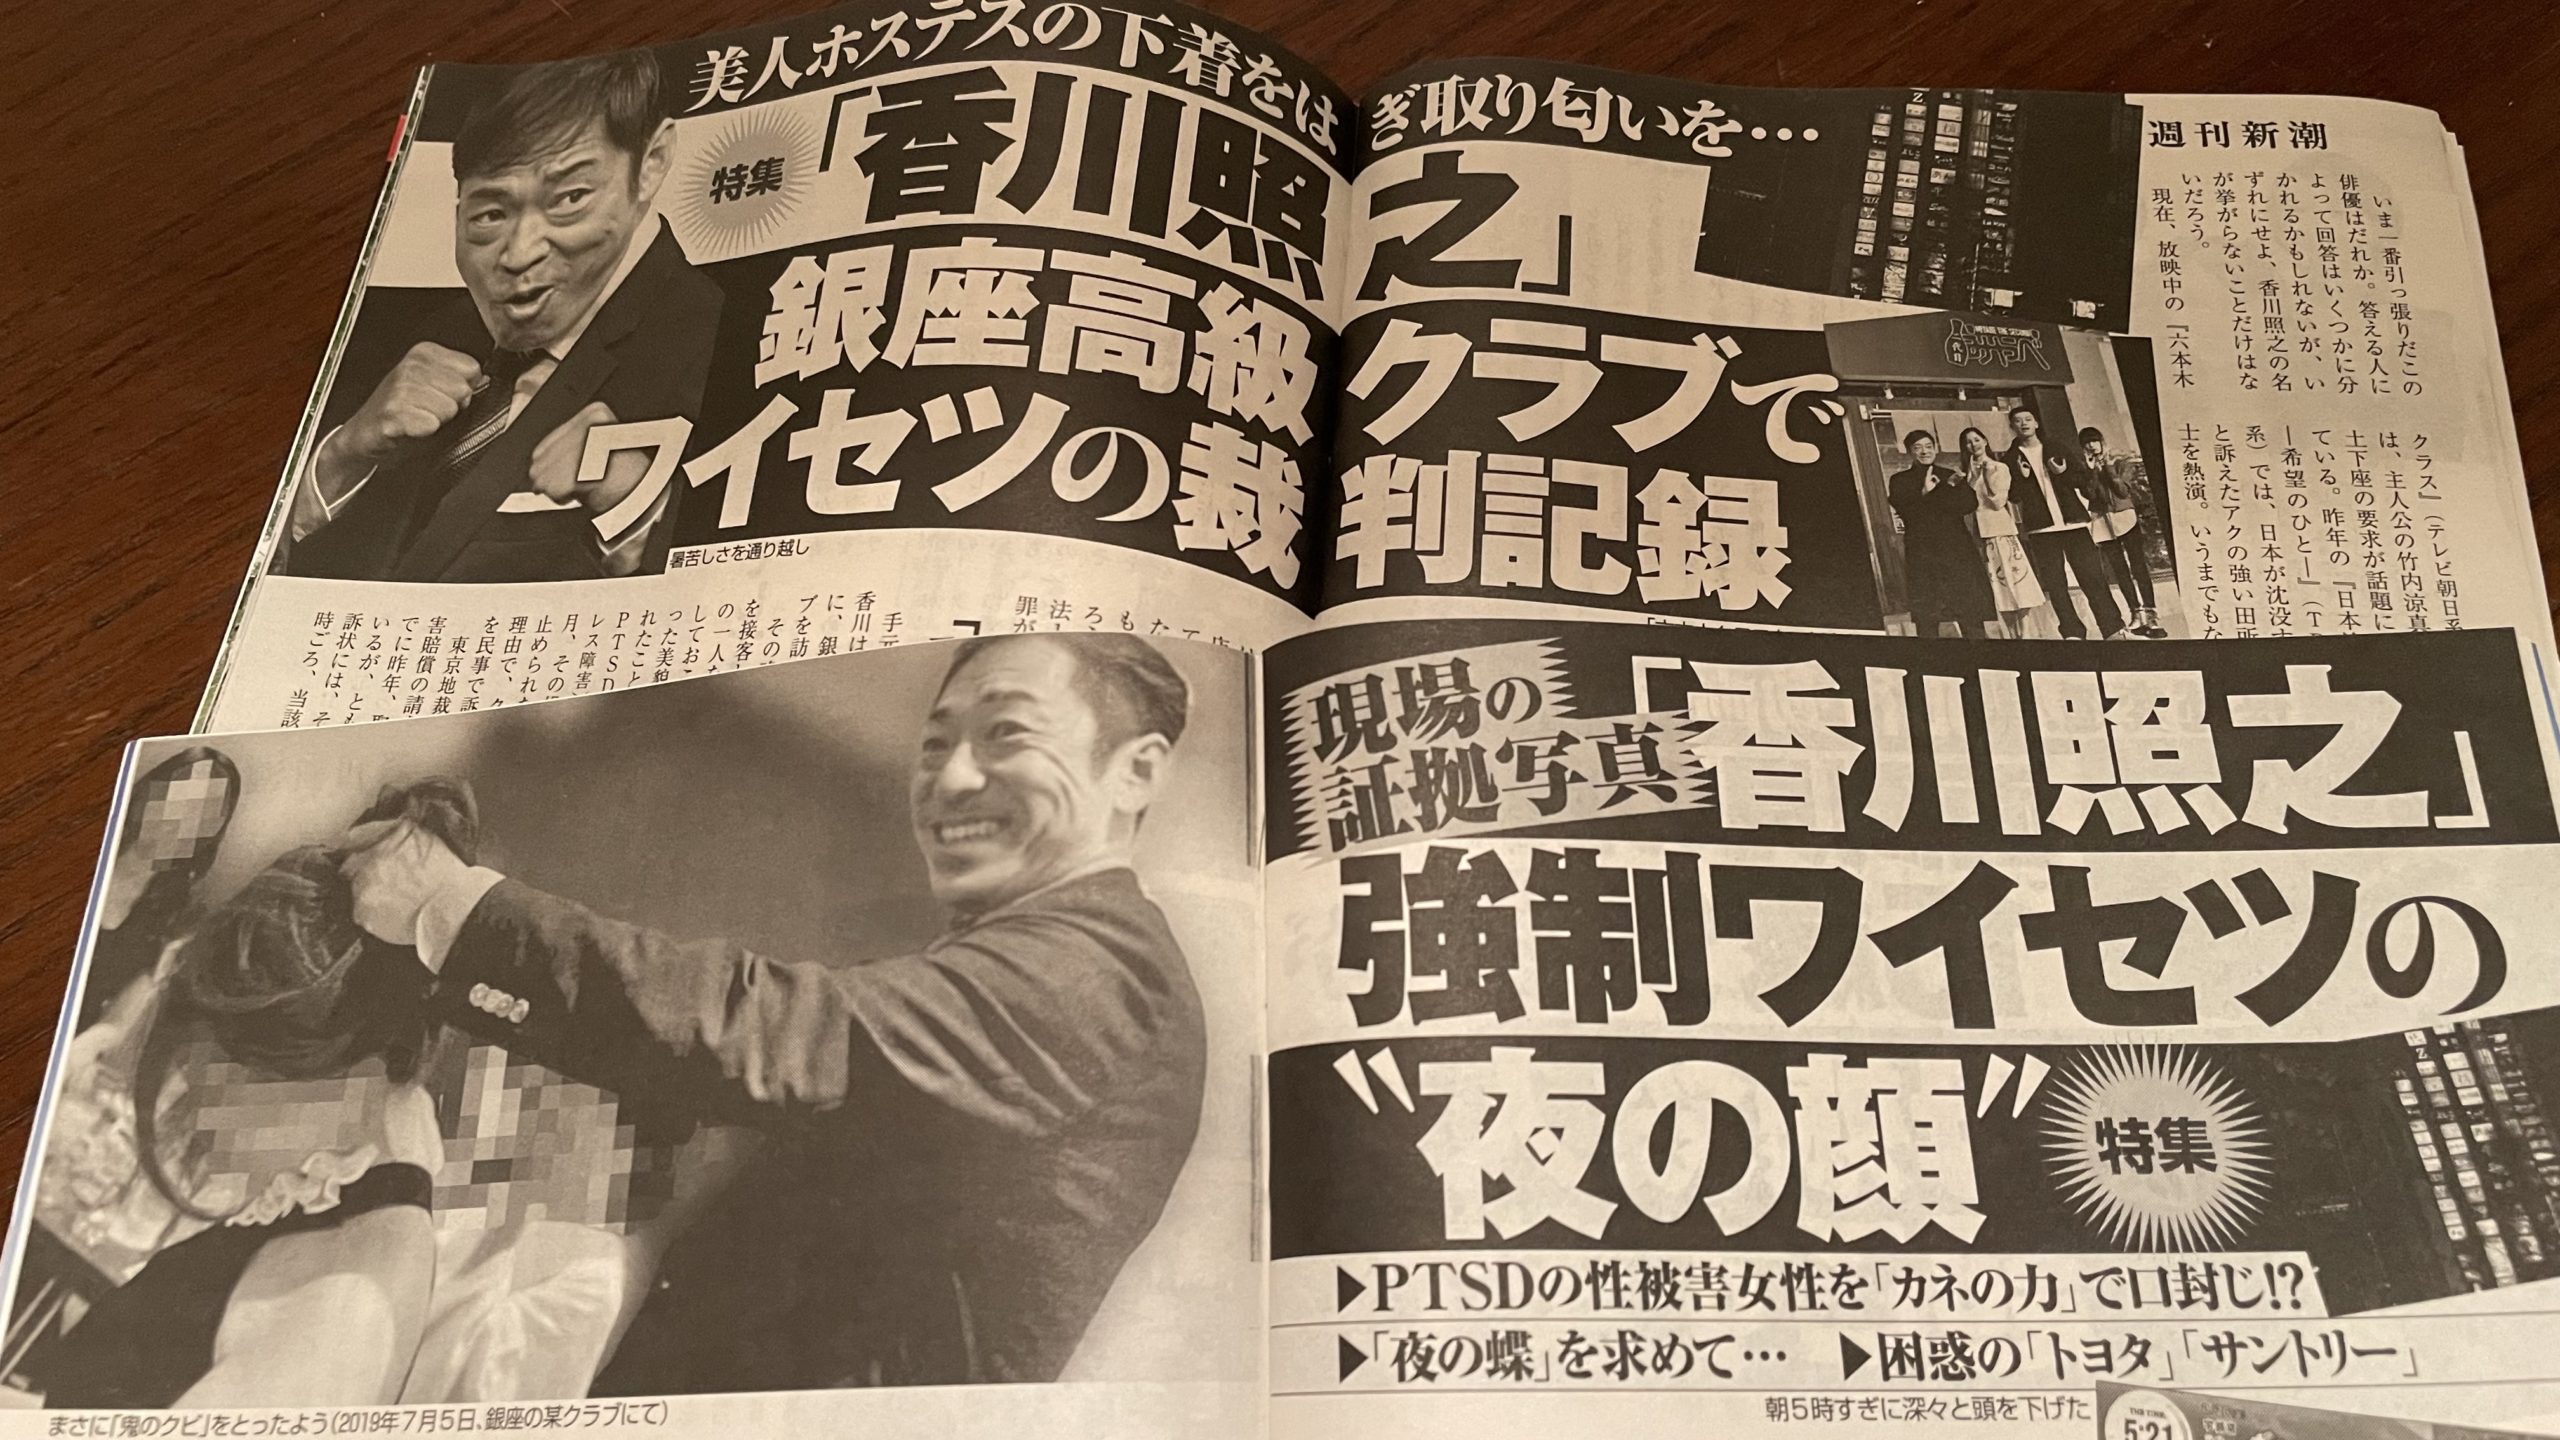 香川照之の銀座ホステス暴行と証拠写真を報じる週刊新潮の週刊誌2冊